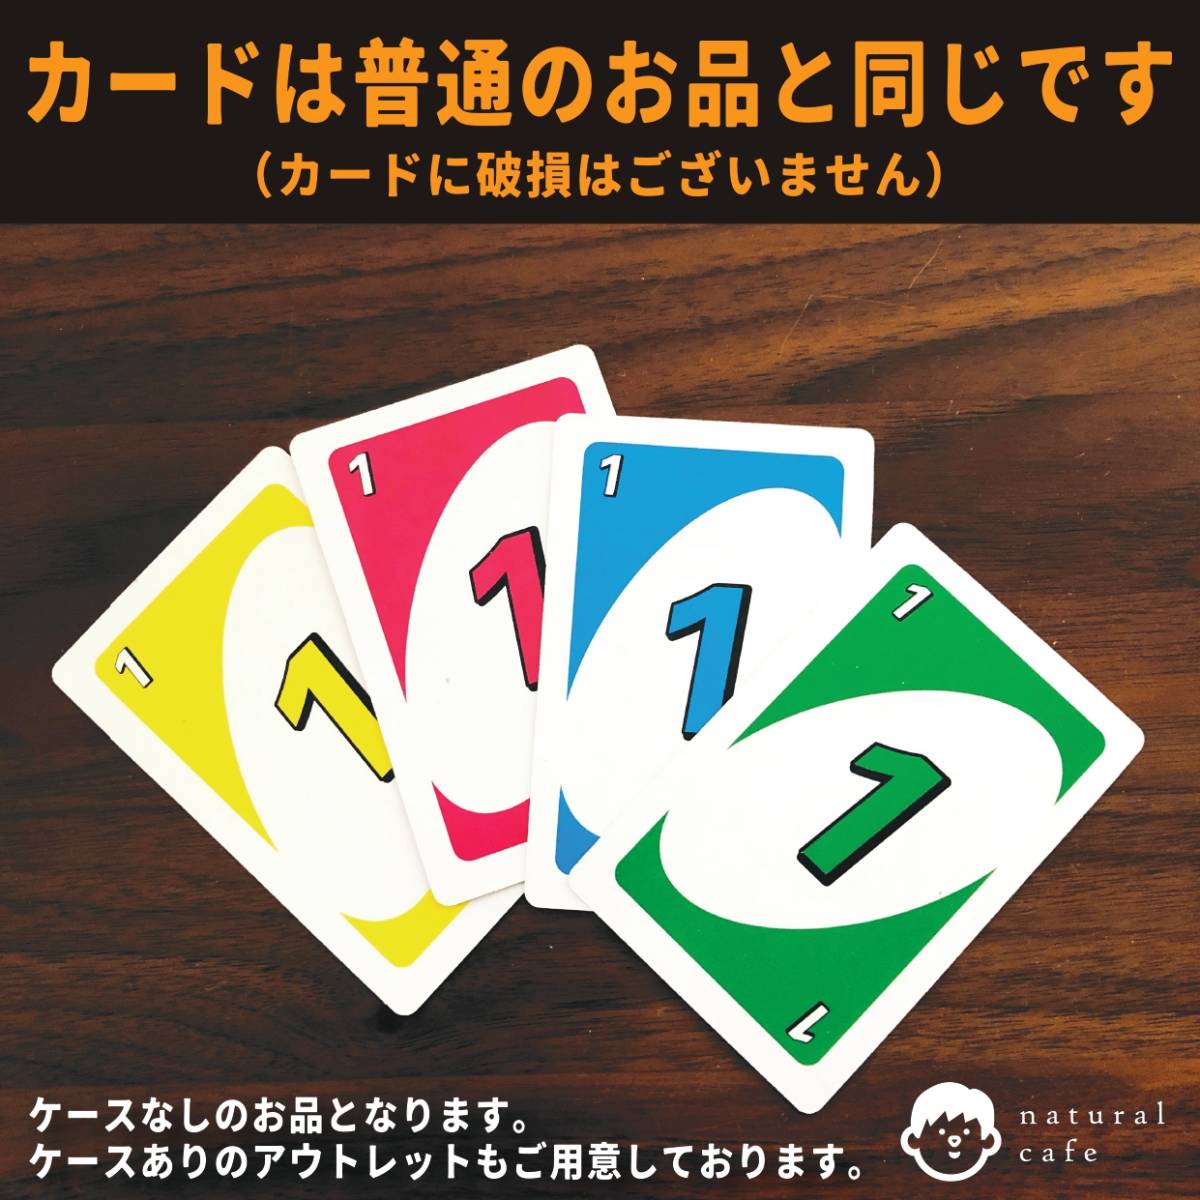 【新品】UNO ウノ　カードゲーム（アウトレット）カードのみ